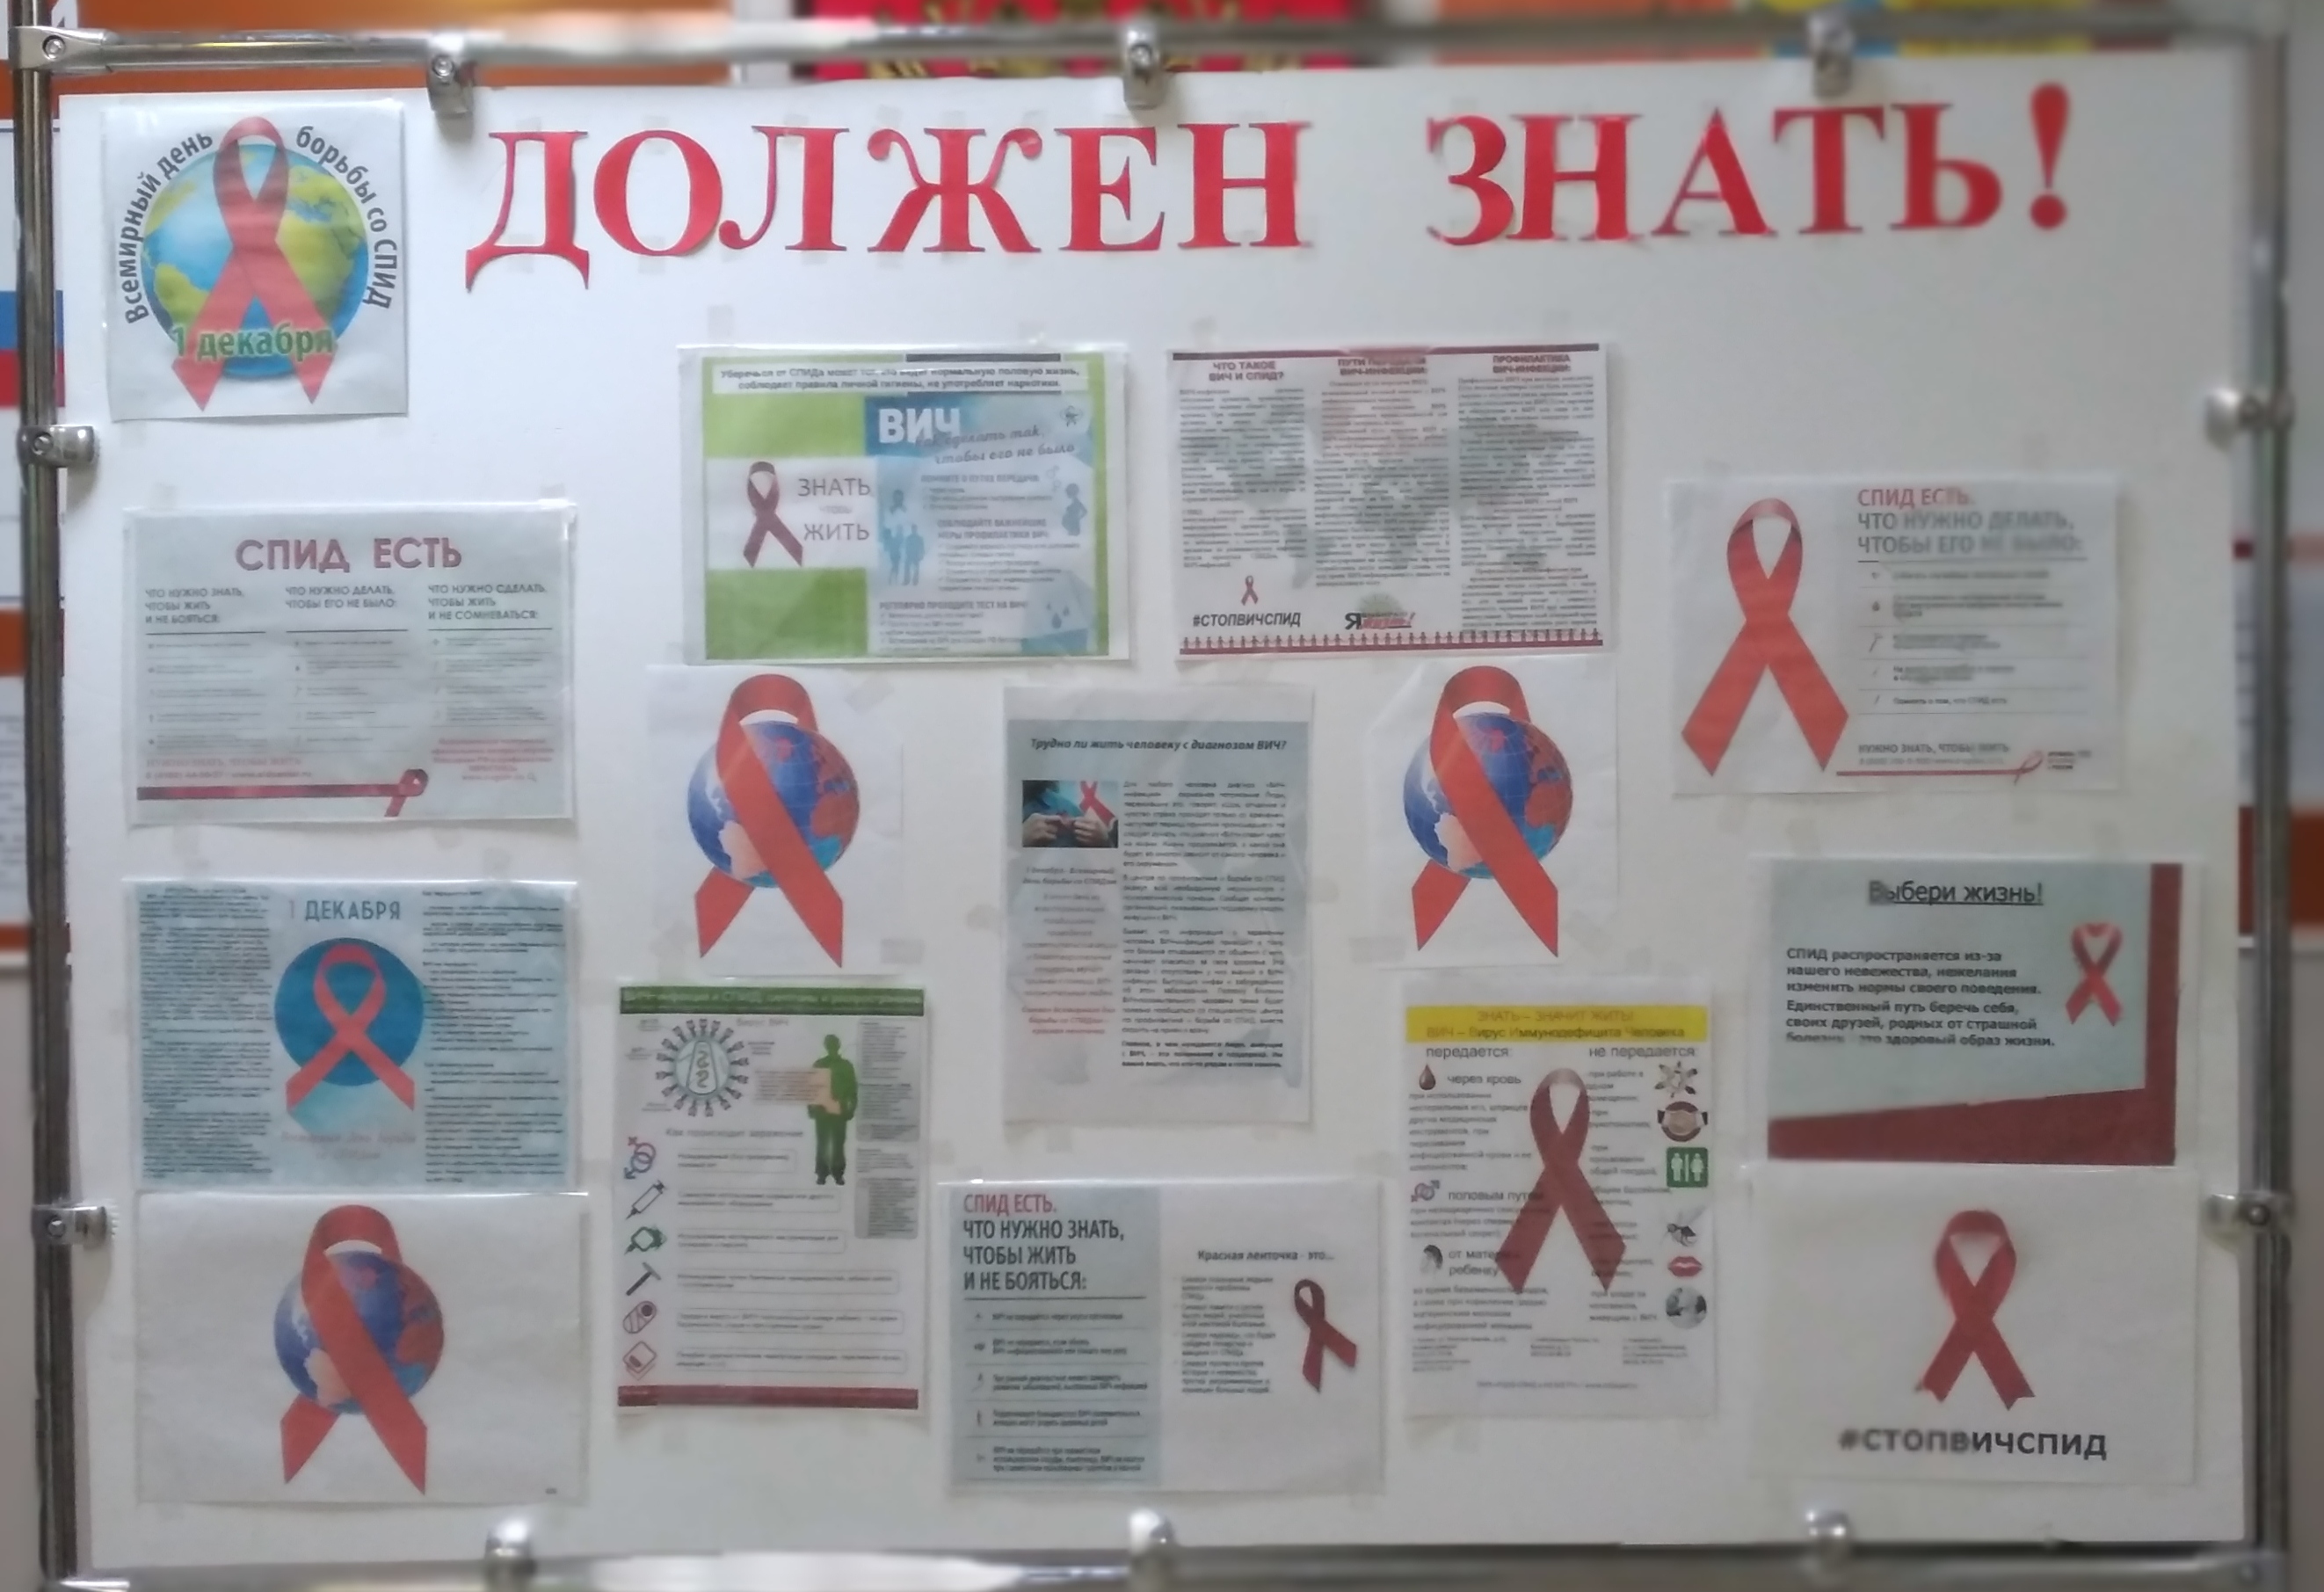 Акция к международному дню борьбы со СПИДом «Должен знать!».